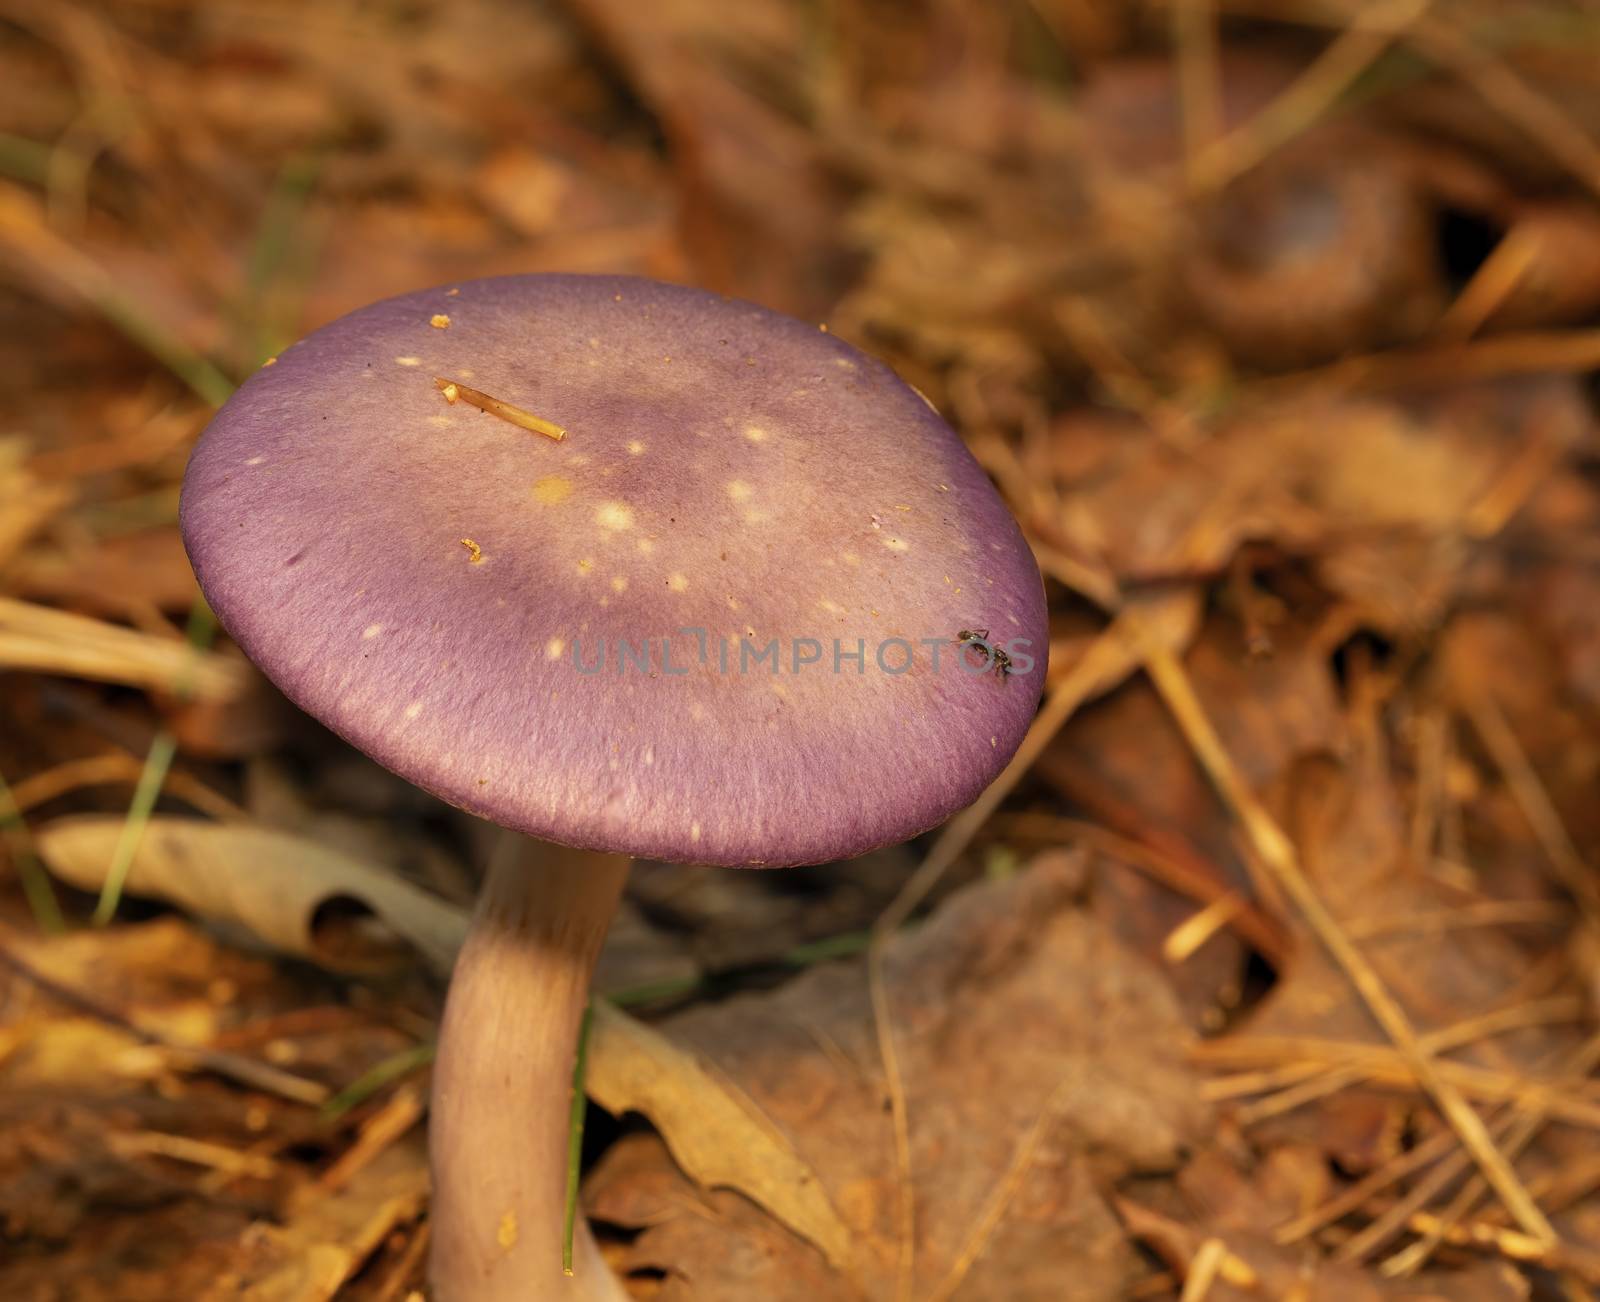 Purple capped mushroom on the forest floor.